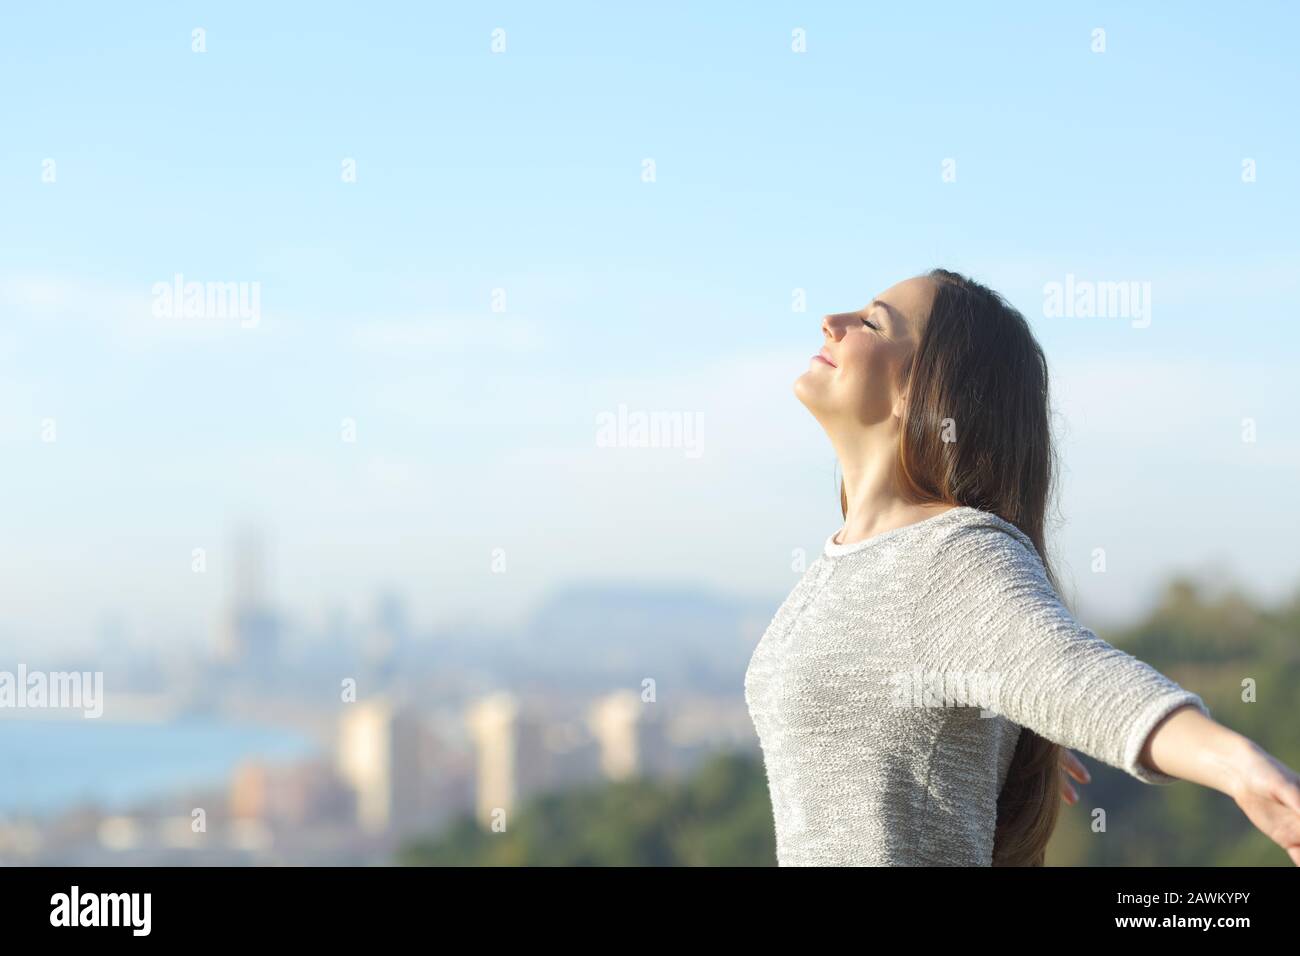 Profil d'une femme qui respire de l'air profondément frais avec une ville en arrière-plan Banque D'Images